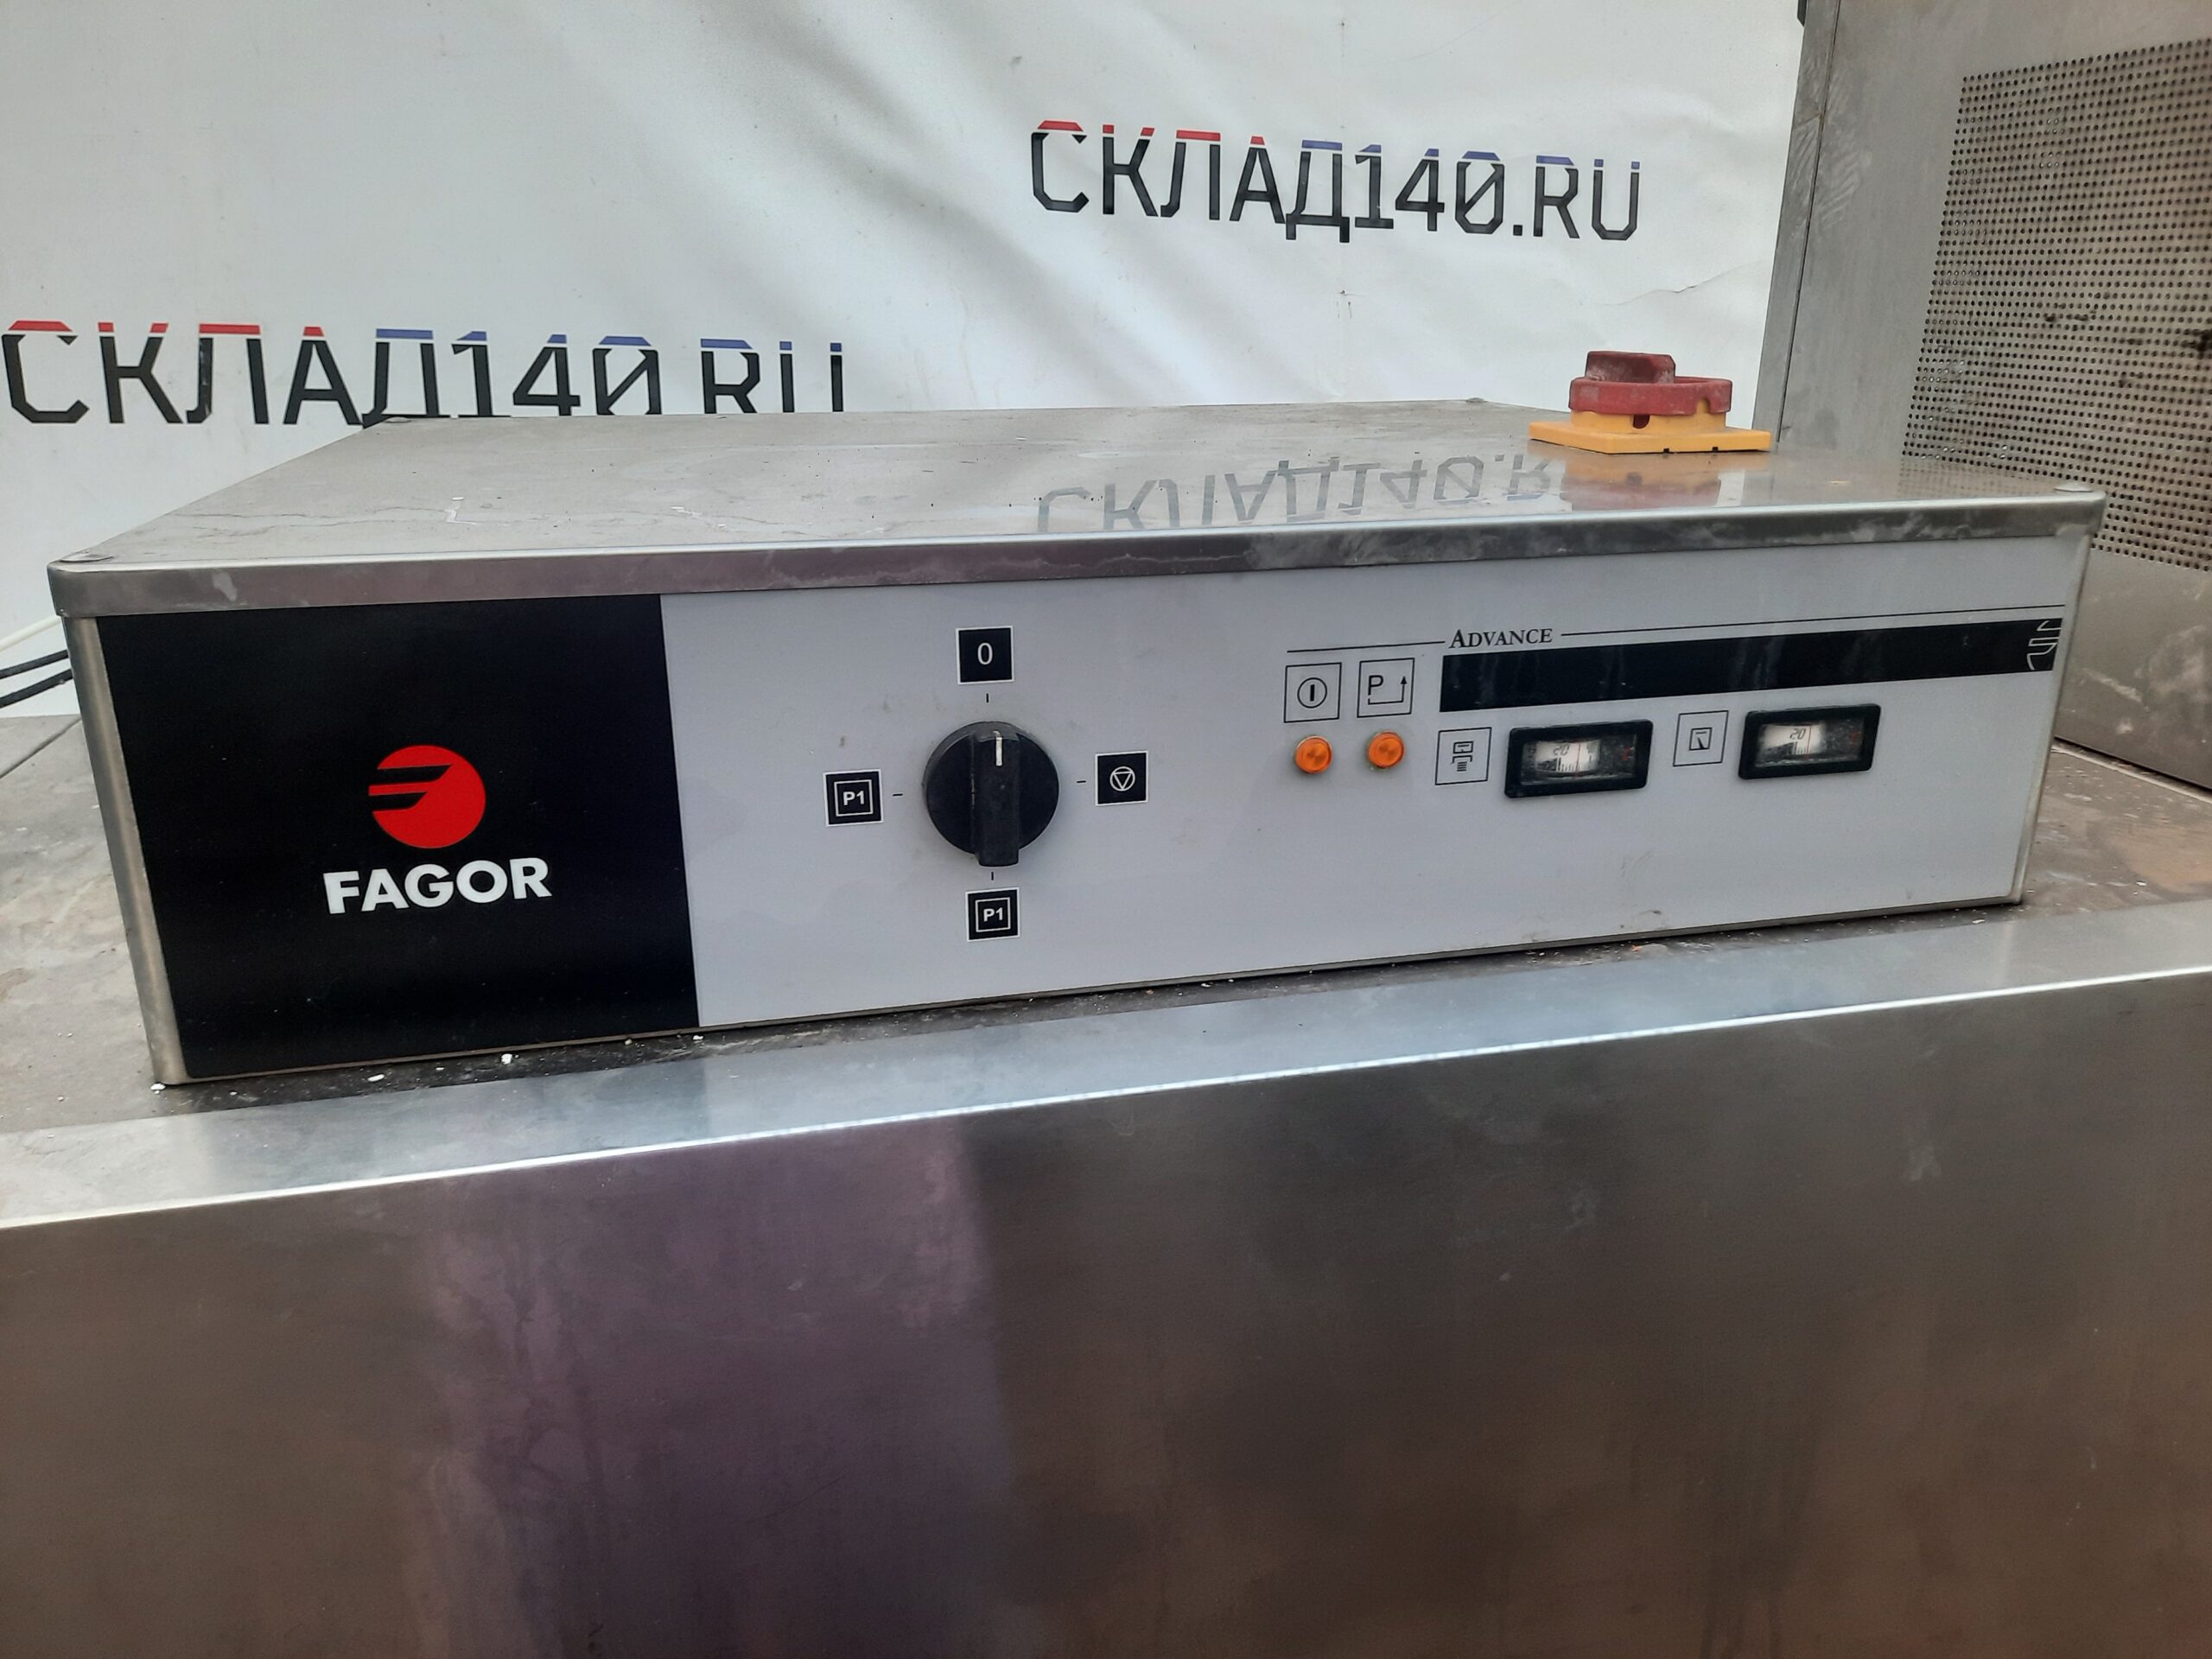 Купить Посудомоечная машина туннельная Fagor fi-160-i